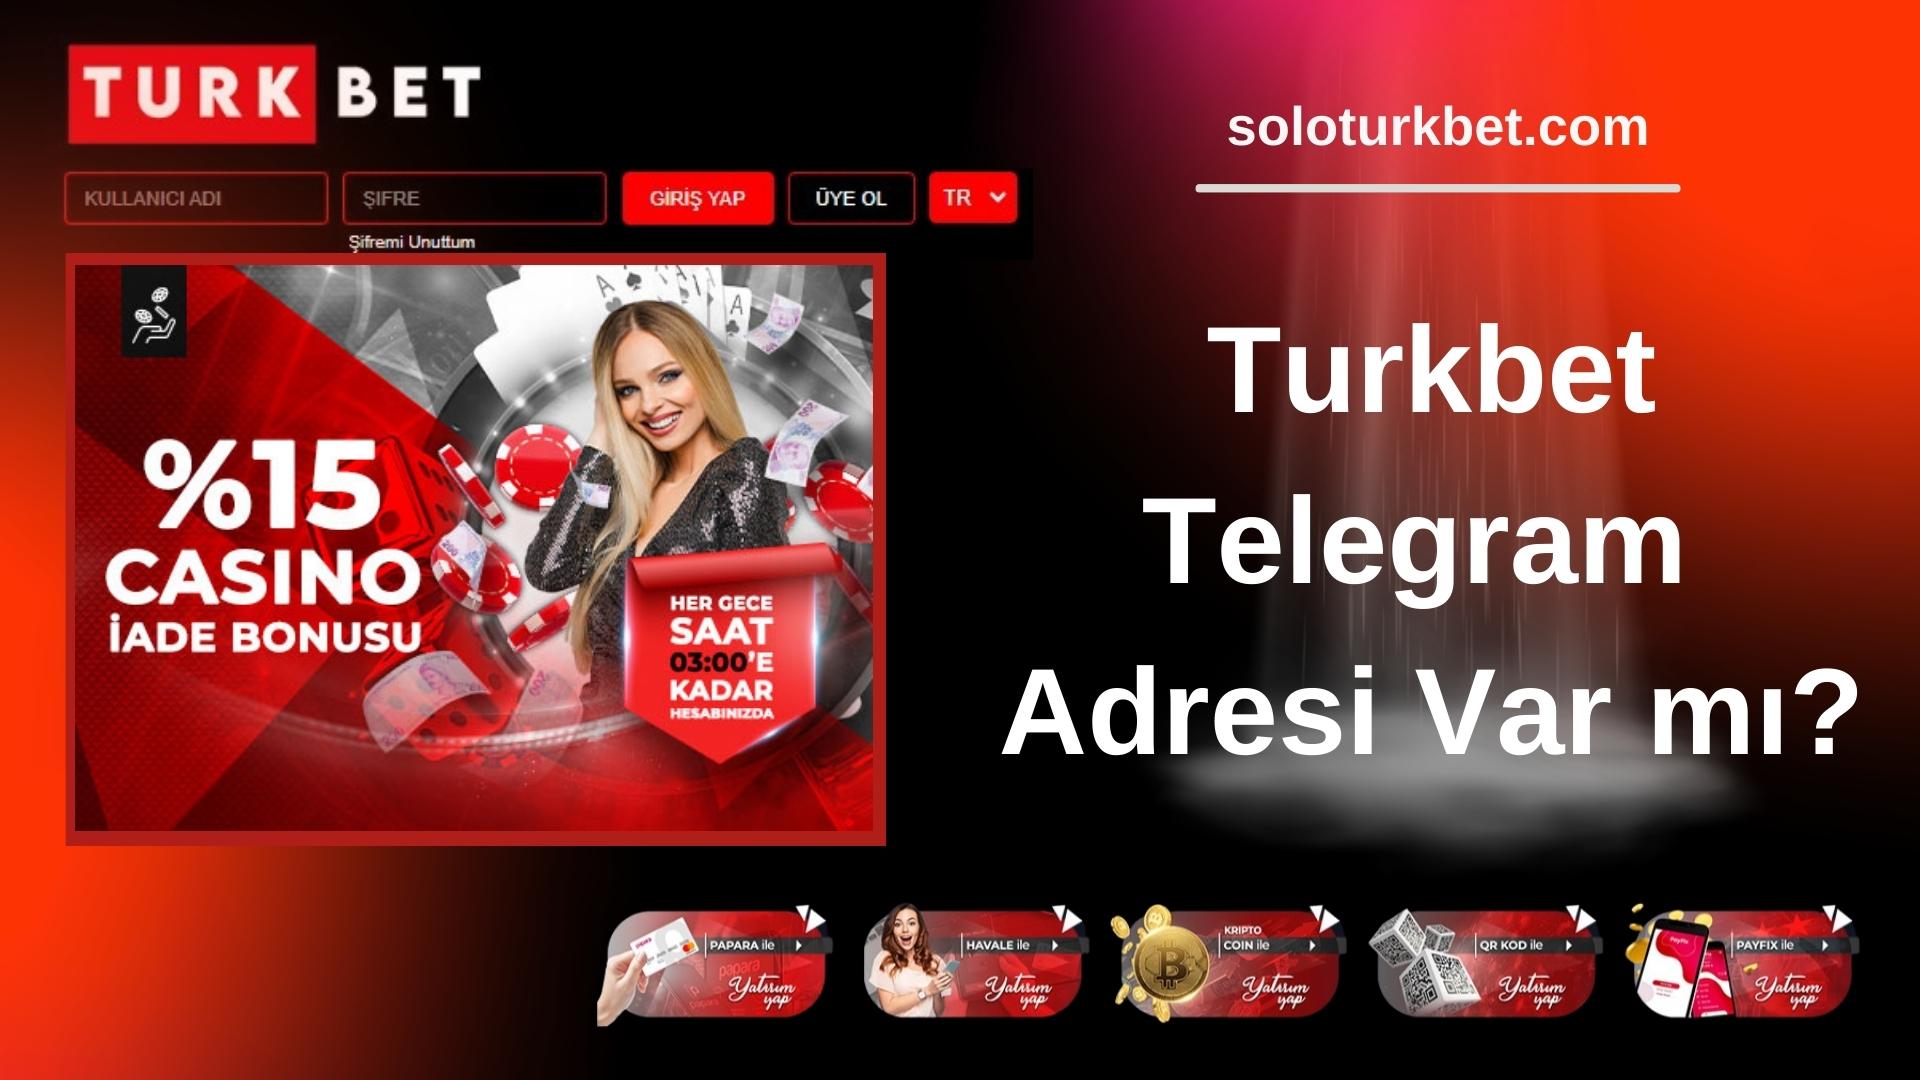 Turkbet Telegram Adresi Var mı